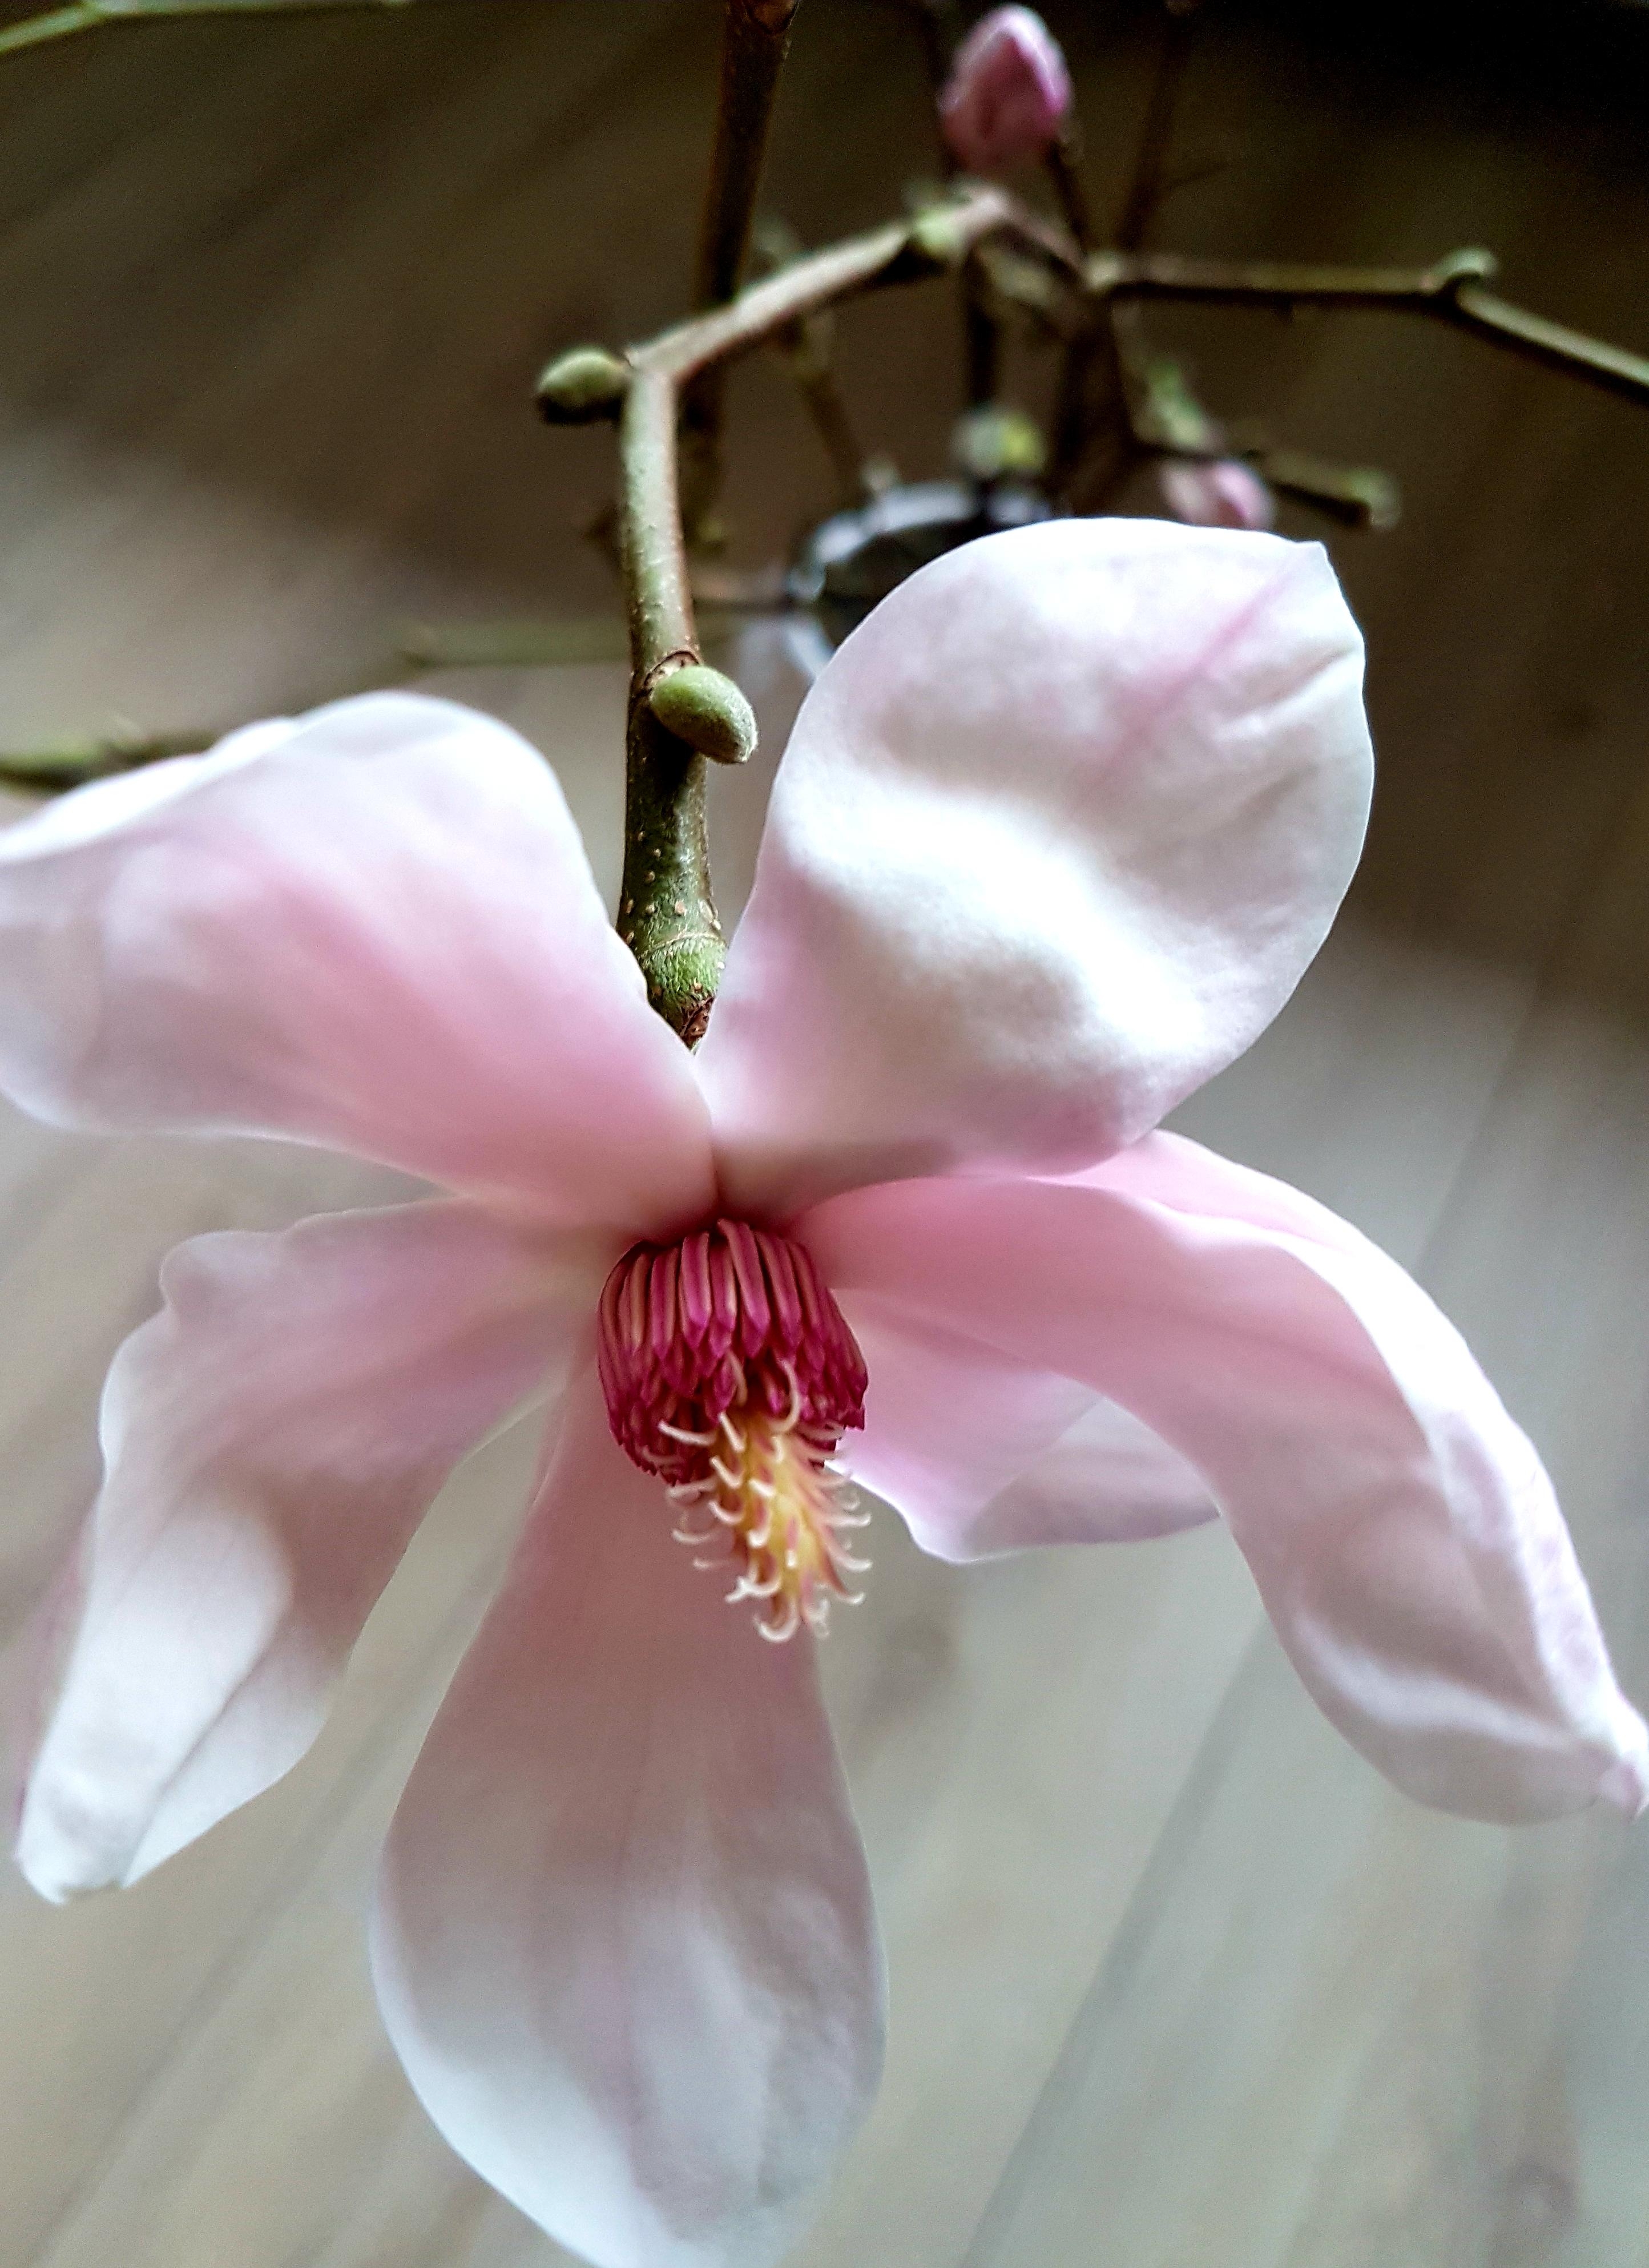 Schlichte Schönheit, einfach nur schön # Magnolienblüte